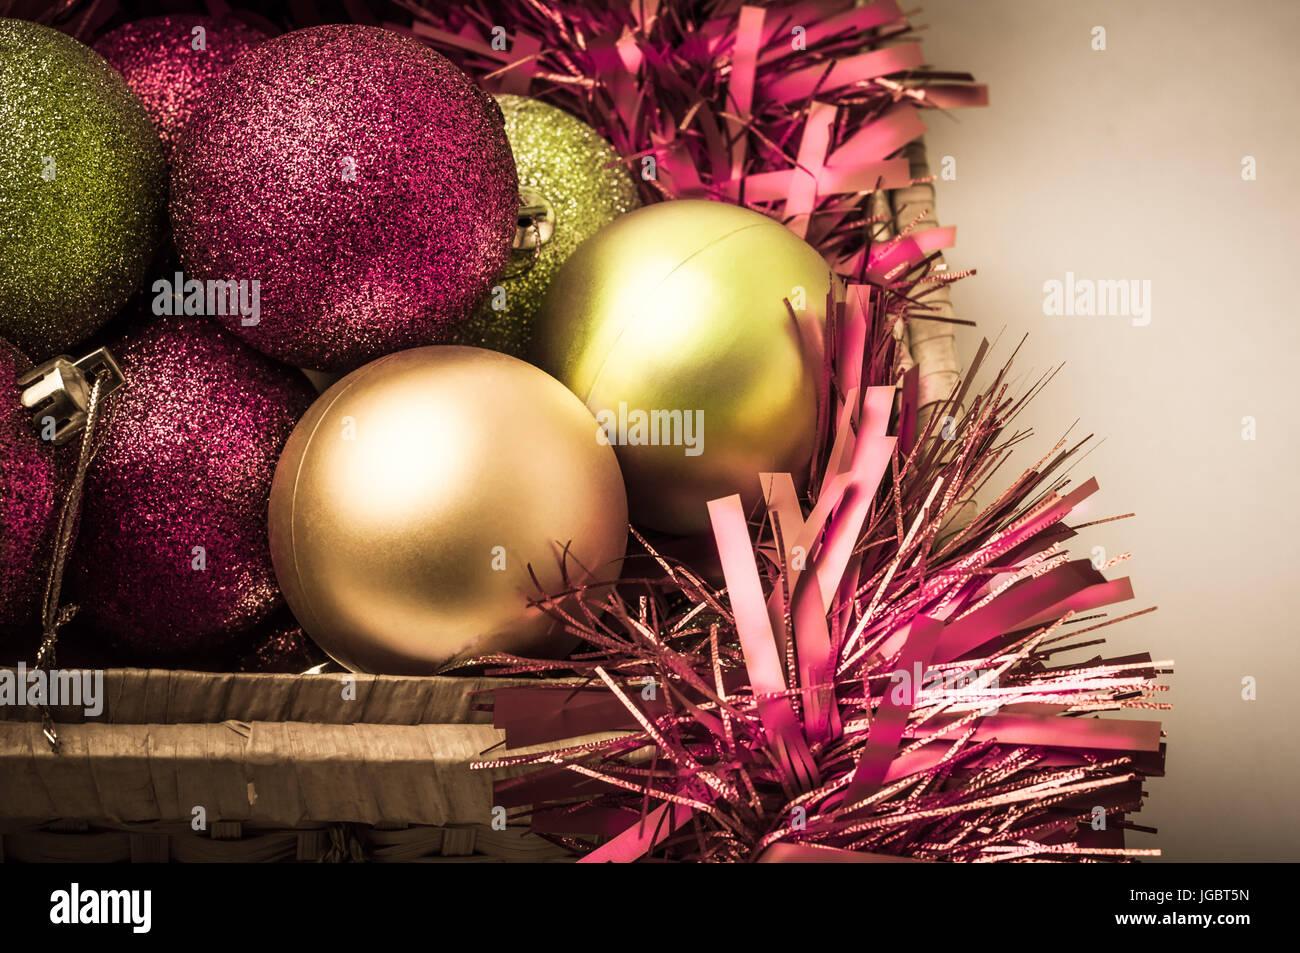 Weihnachtskugeln in rosa, grüne und goldene Farbtönen mit Lametta in einem geöffneten Korb zu bedeuten Auspacken aus dem Speicher in Vorbereitung auf die Ferien Kranz Stockfoto